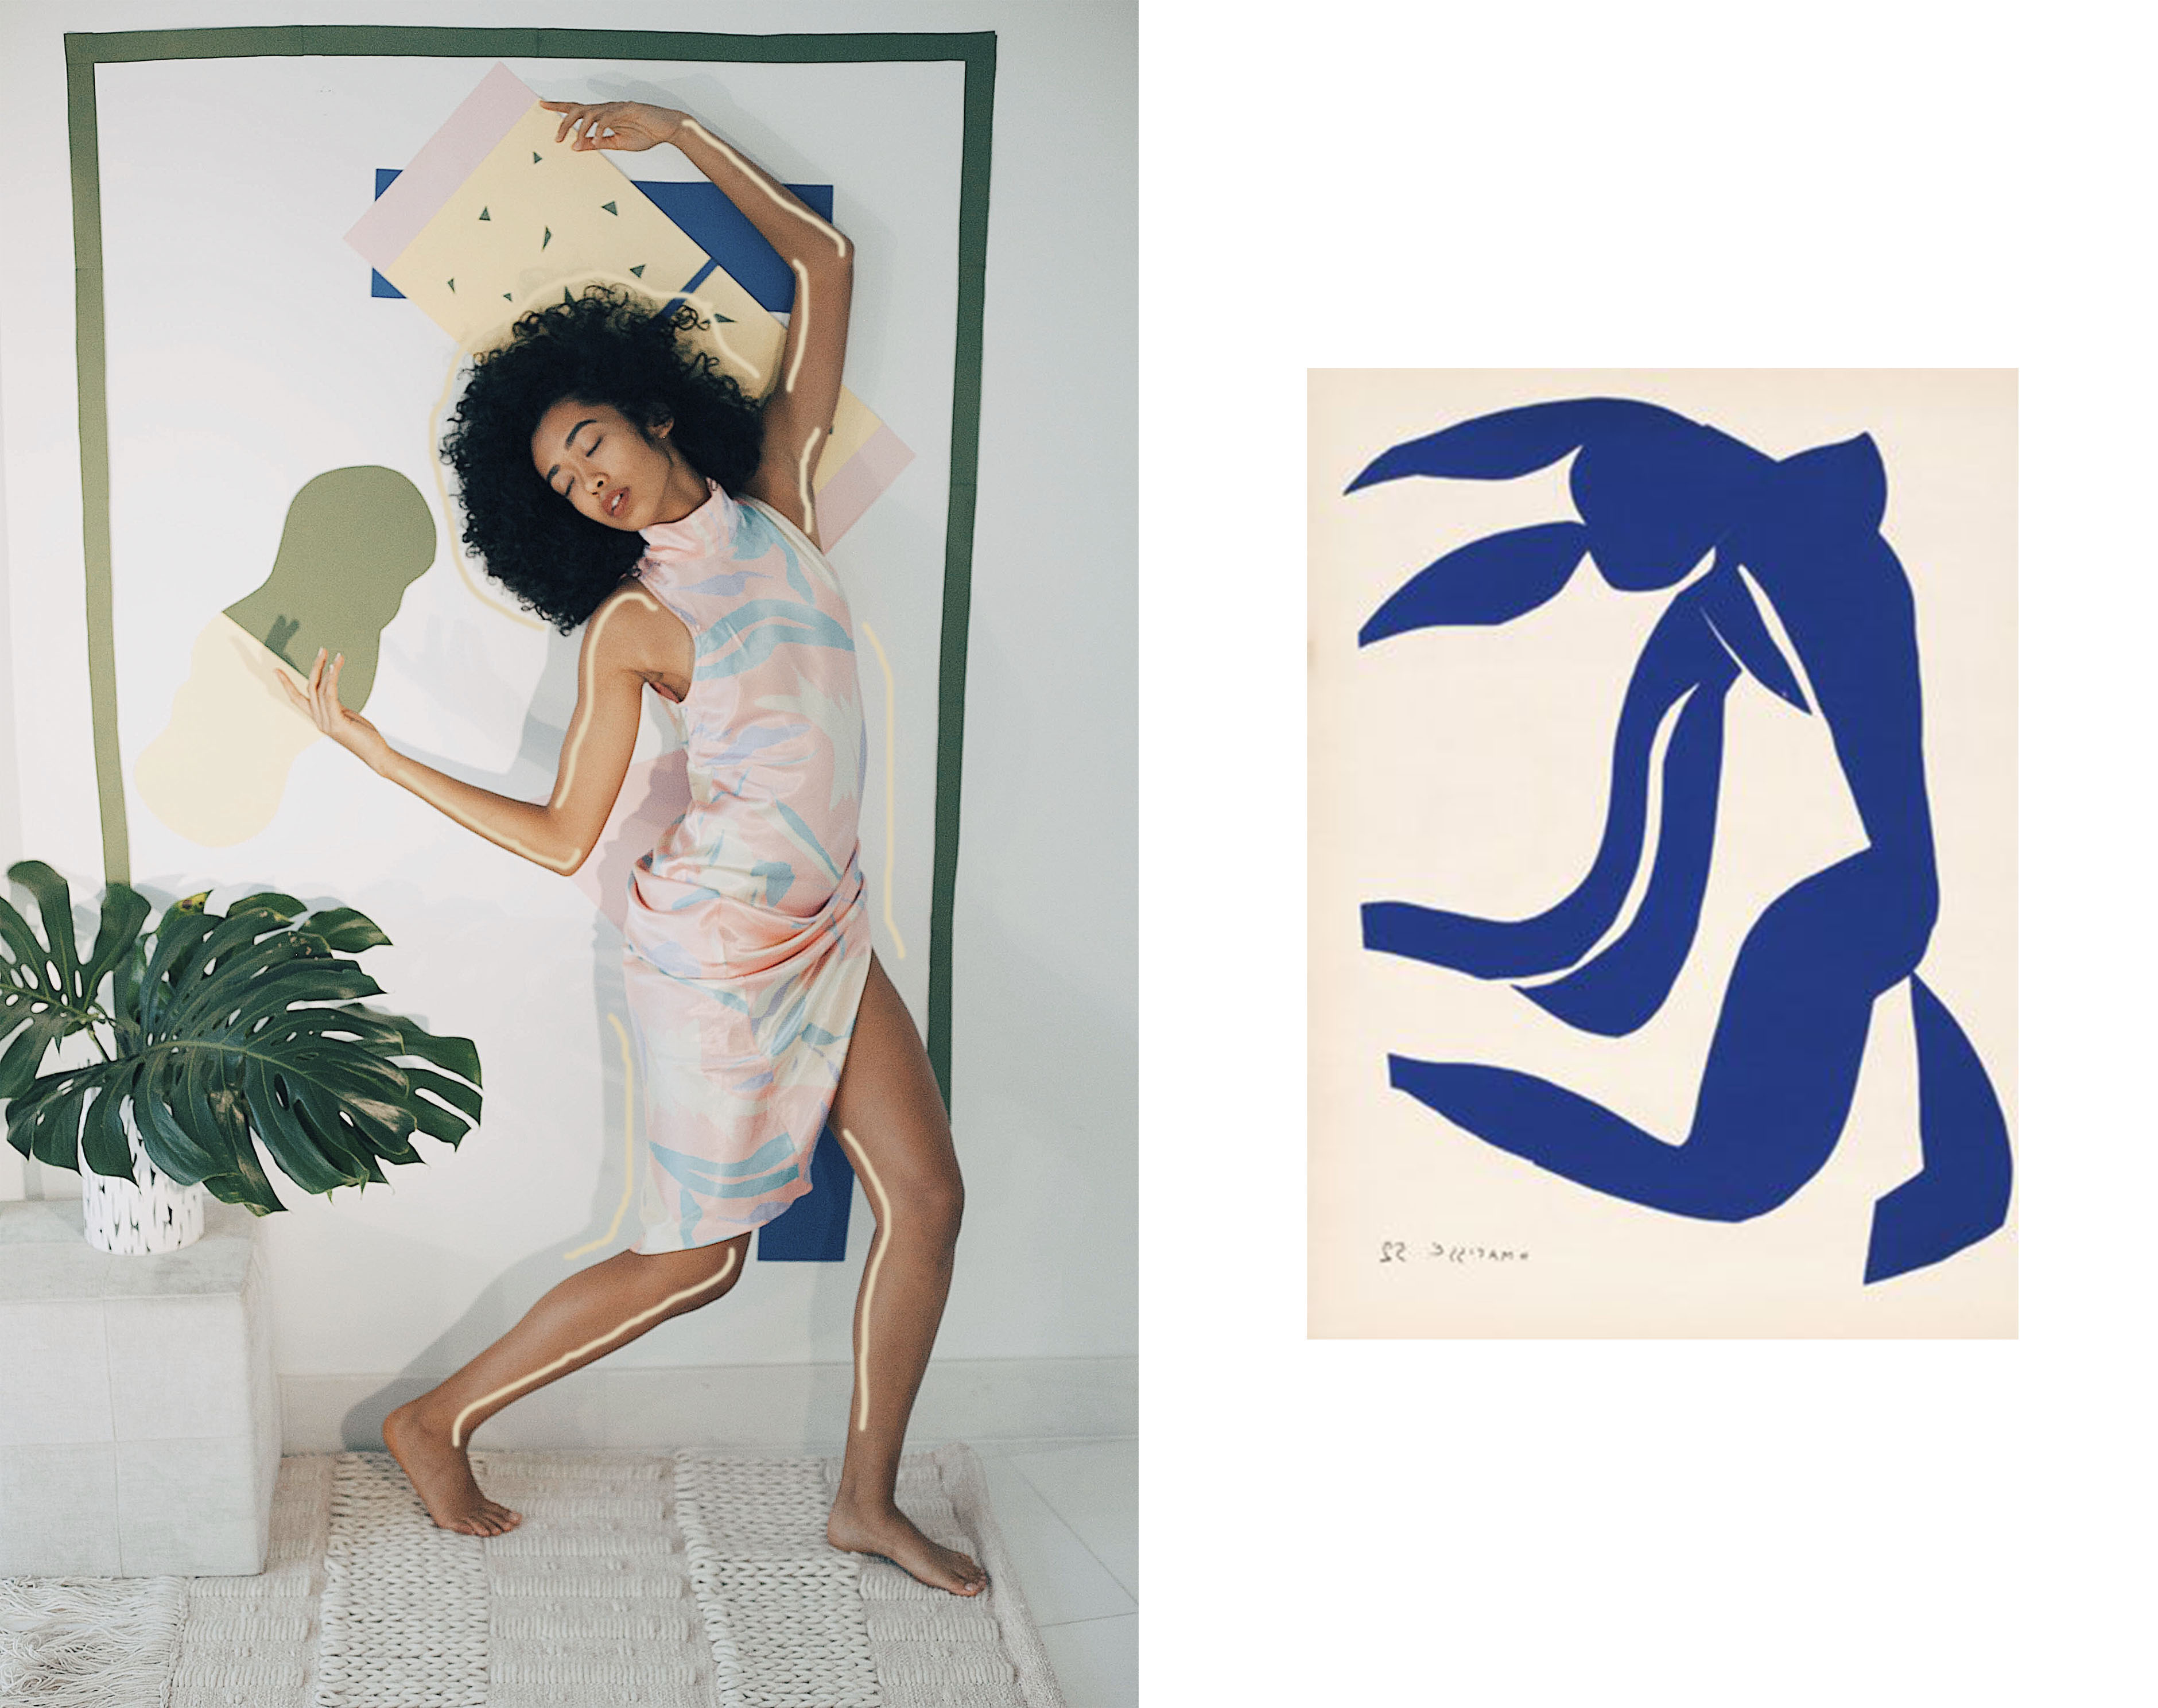 Matisse, Inspiration, Modern Art, Photography